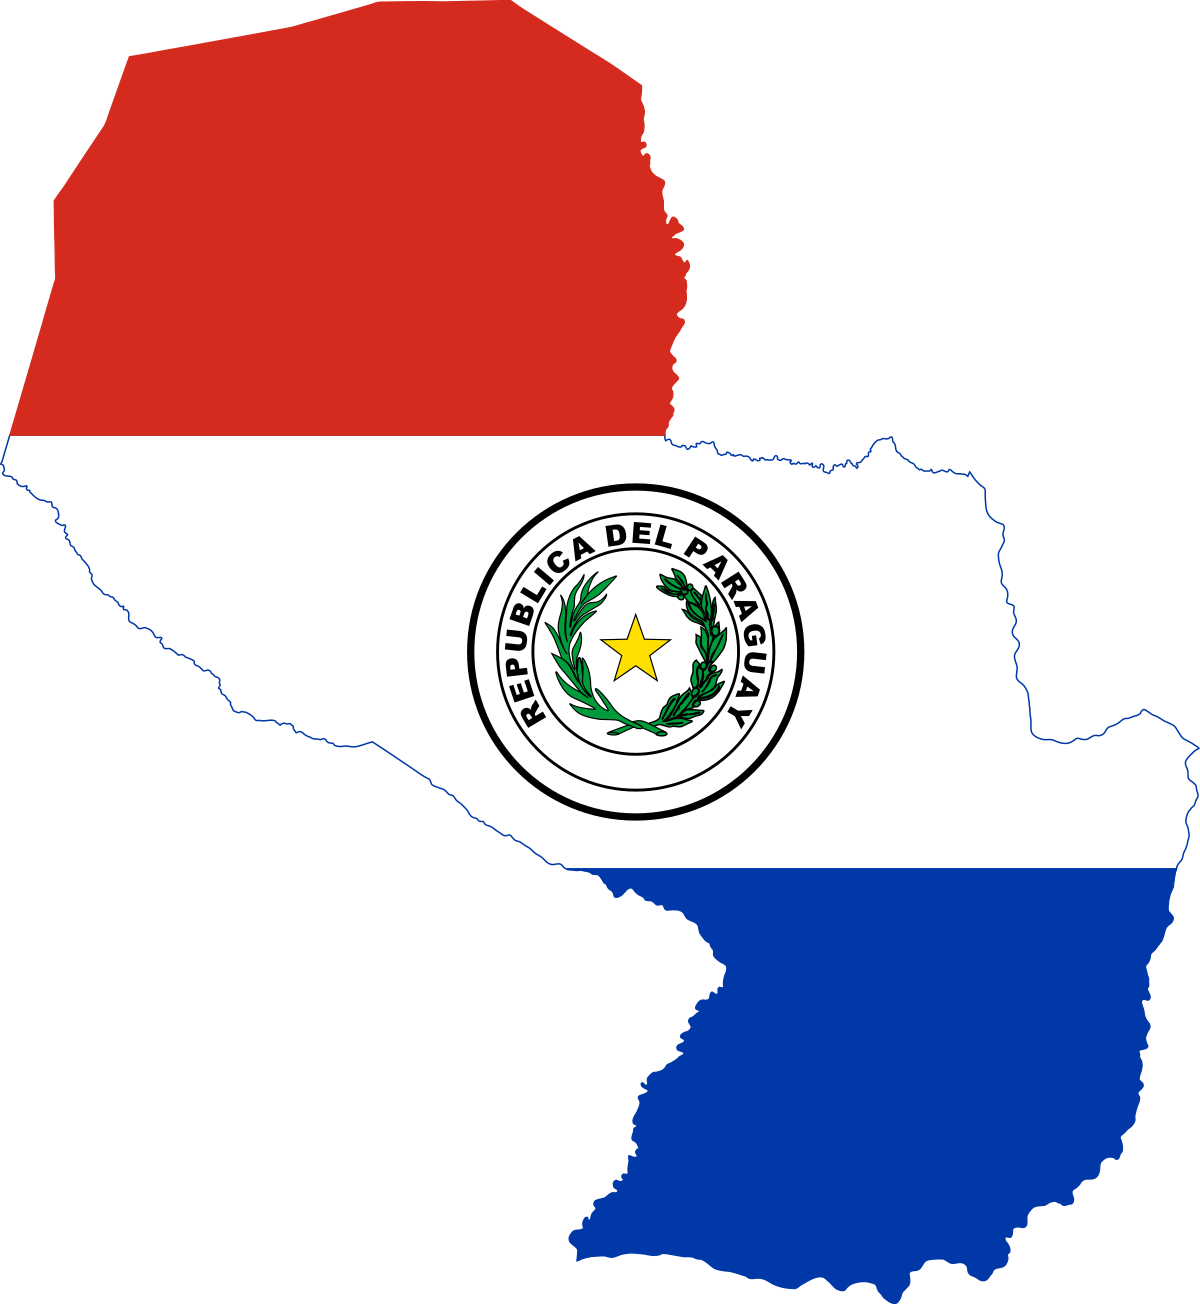 ¿Cómo apostar en Bwin desde Paraguay?